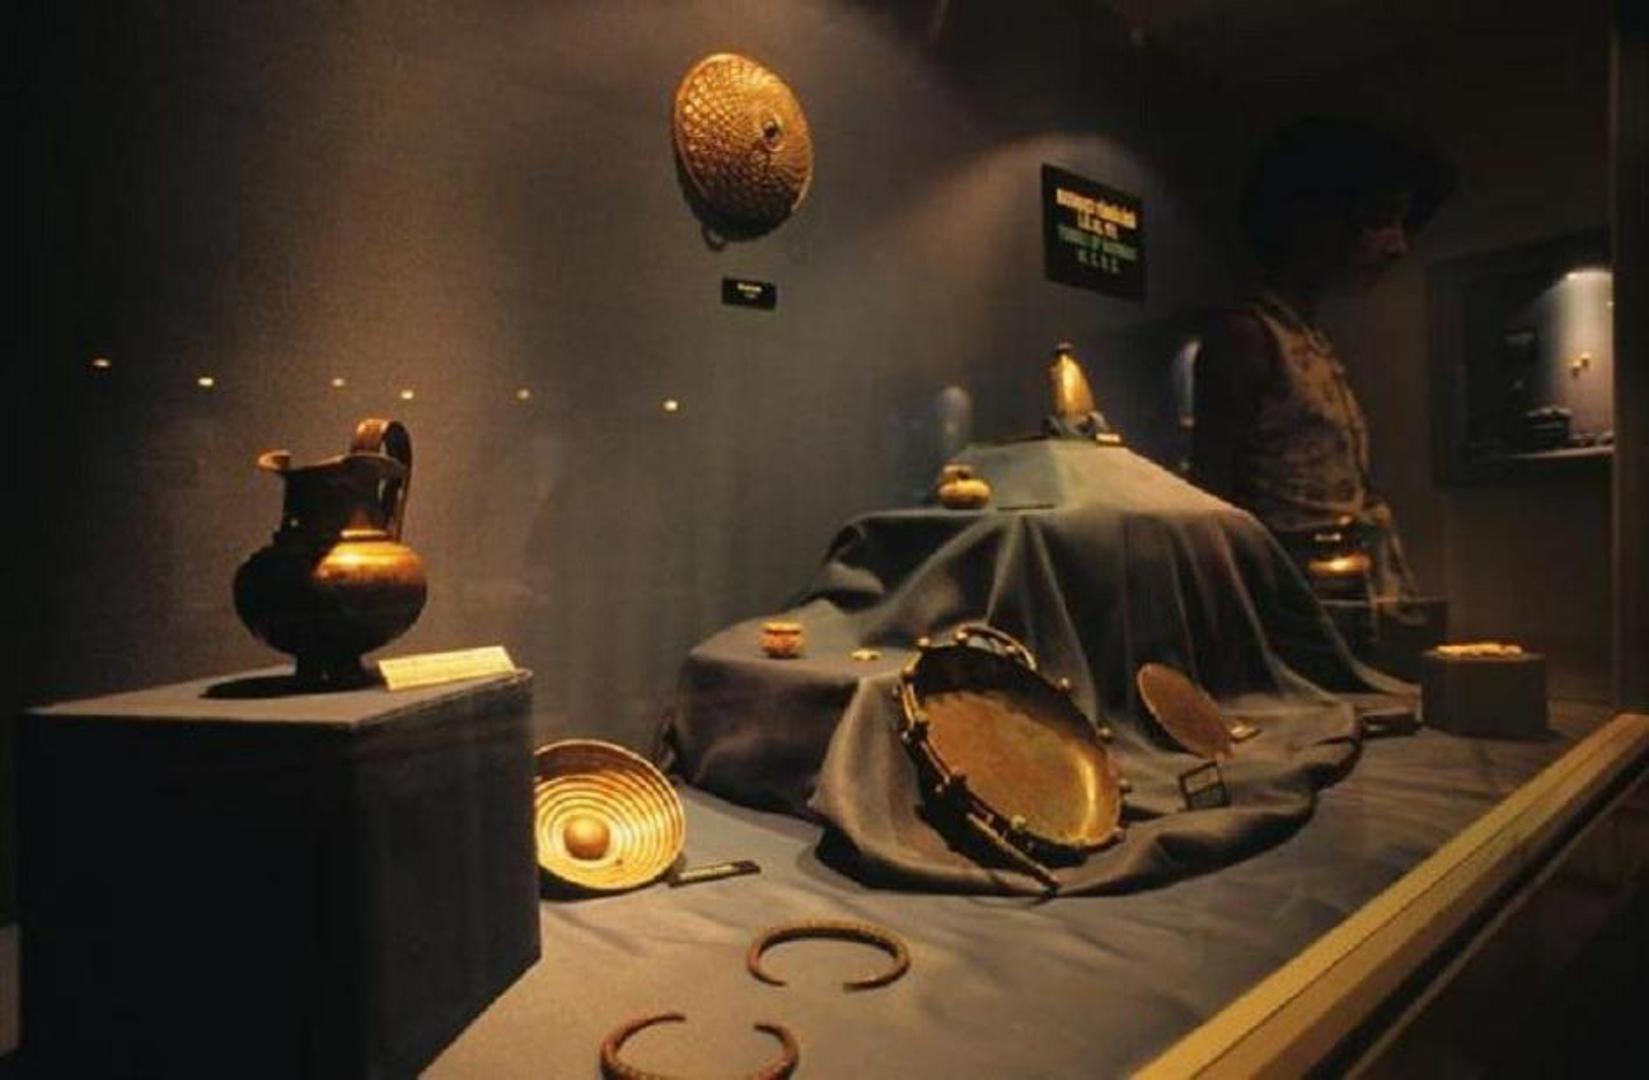 Blago iz Lidijske riznice nestalo je u 7. i 6. stoljeću prije Krista. Kolekcija je pripadala kralju Krezu, a ponovno je otkrivena 1965. kad su mještani opljačkali oko 150 artefakata.